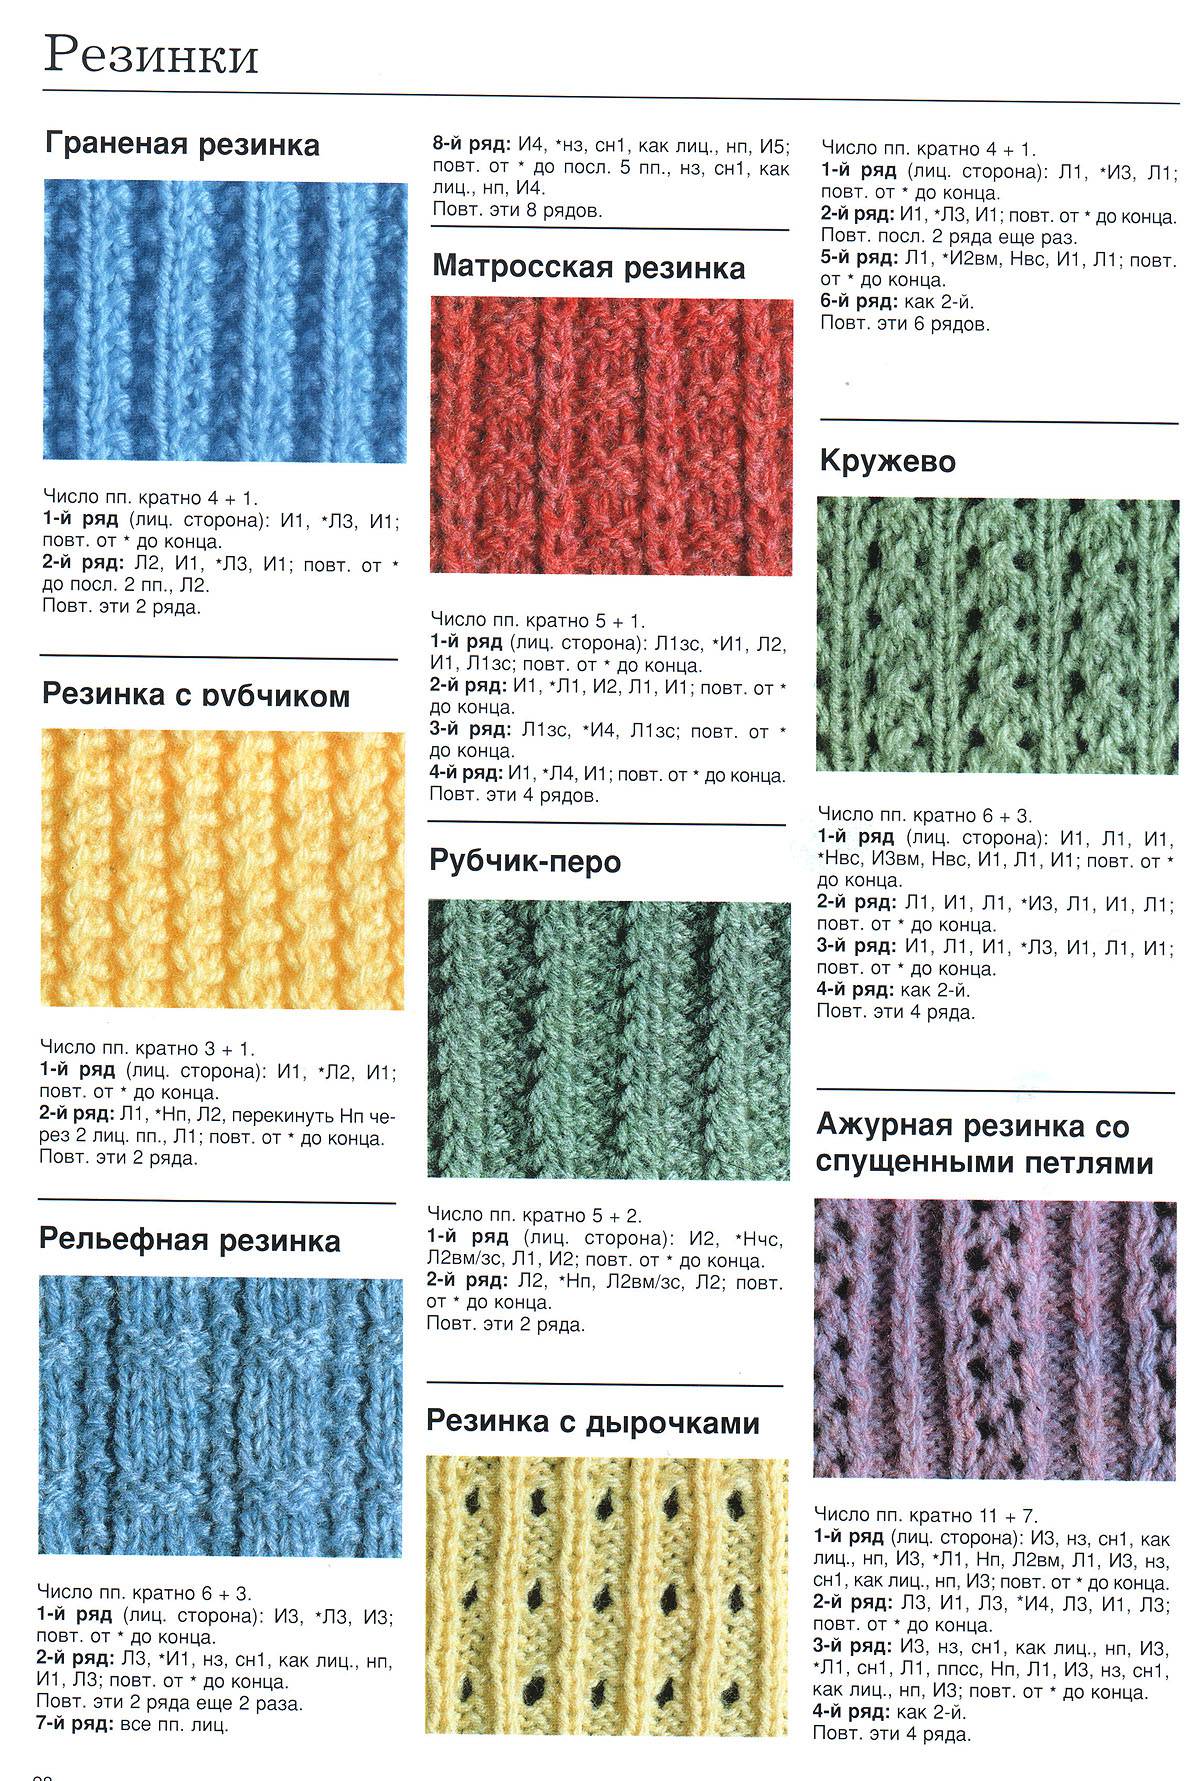 Вязание узора спицами — мастер-классы по вязанию шарфов своими руками с фото-обзорами. разбор способов самодельного вязания спицами